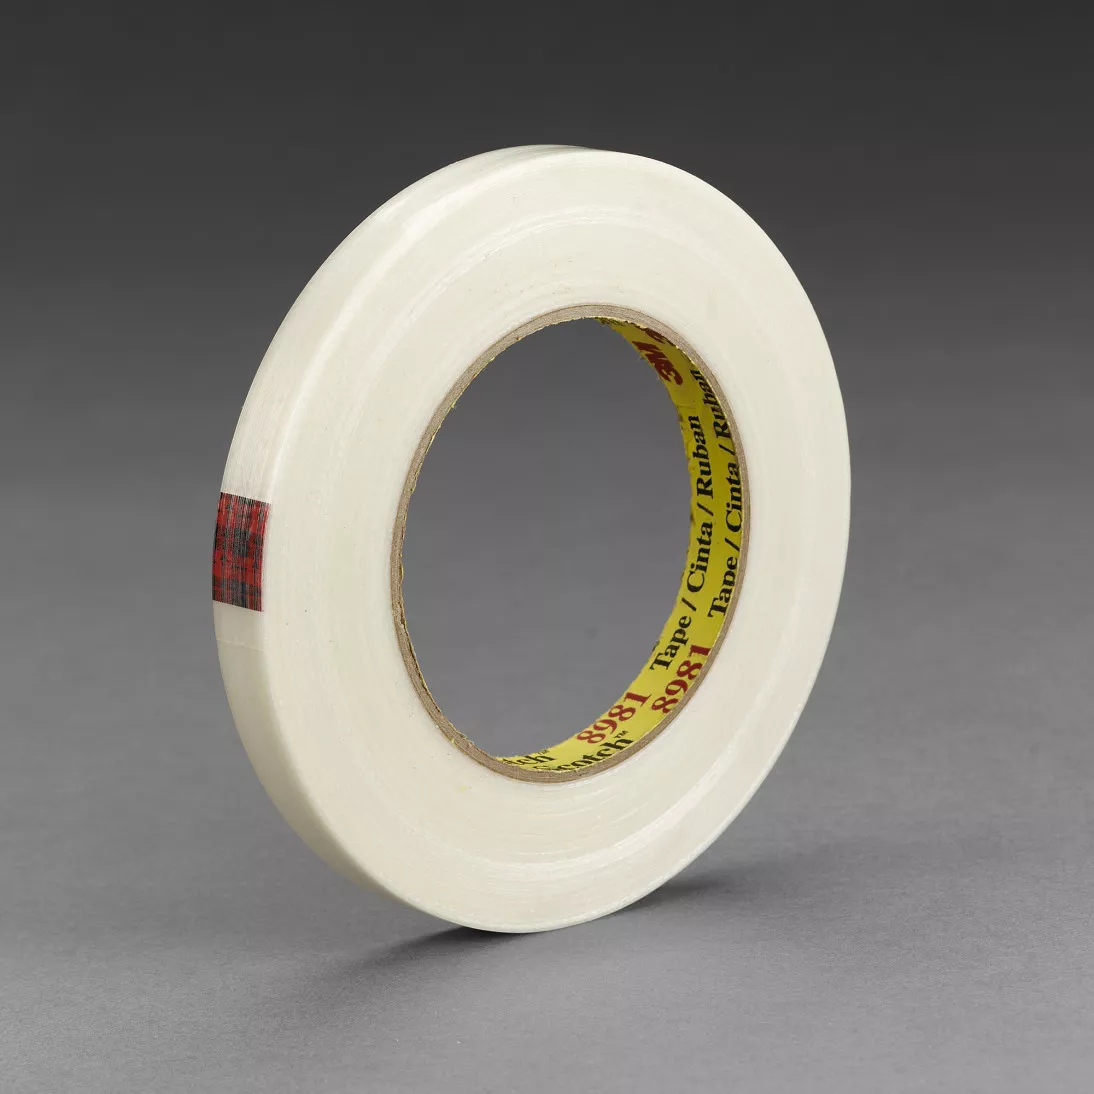 Scotch® Filament Tape 8981, Clear, 18 mm x 55 m, 6.6 mil, 48 rolls per
case